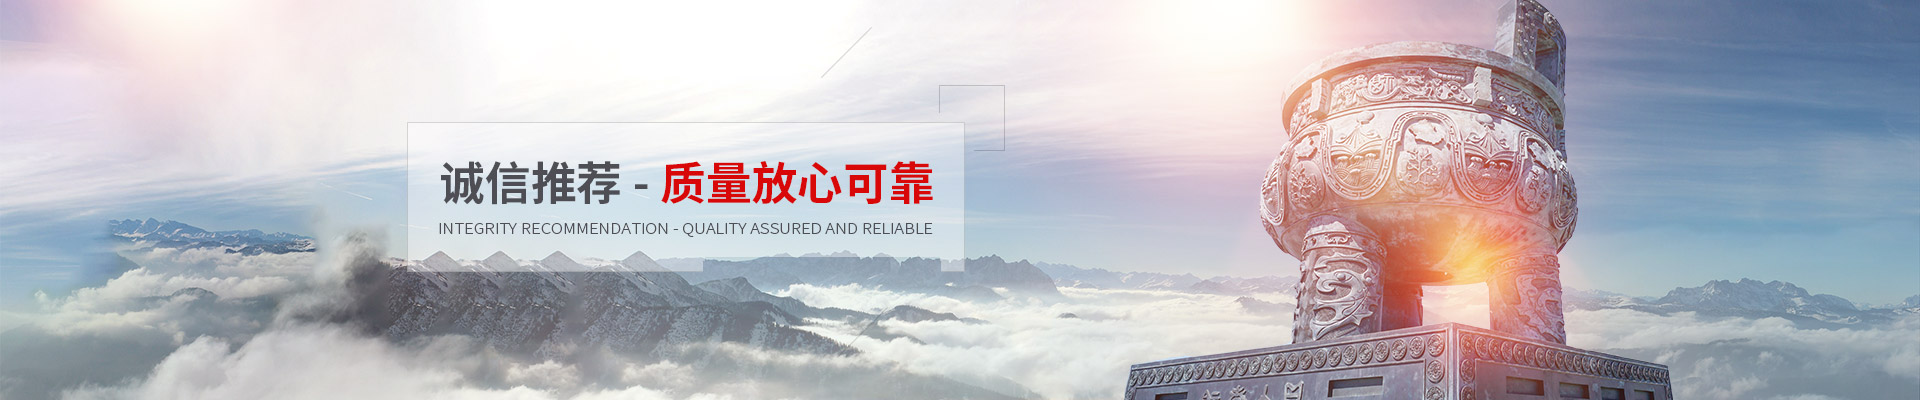 上海威特力热管散热器股份有限公司公司介绍